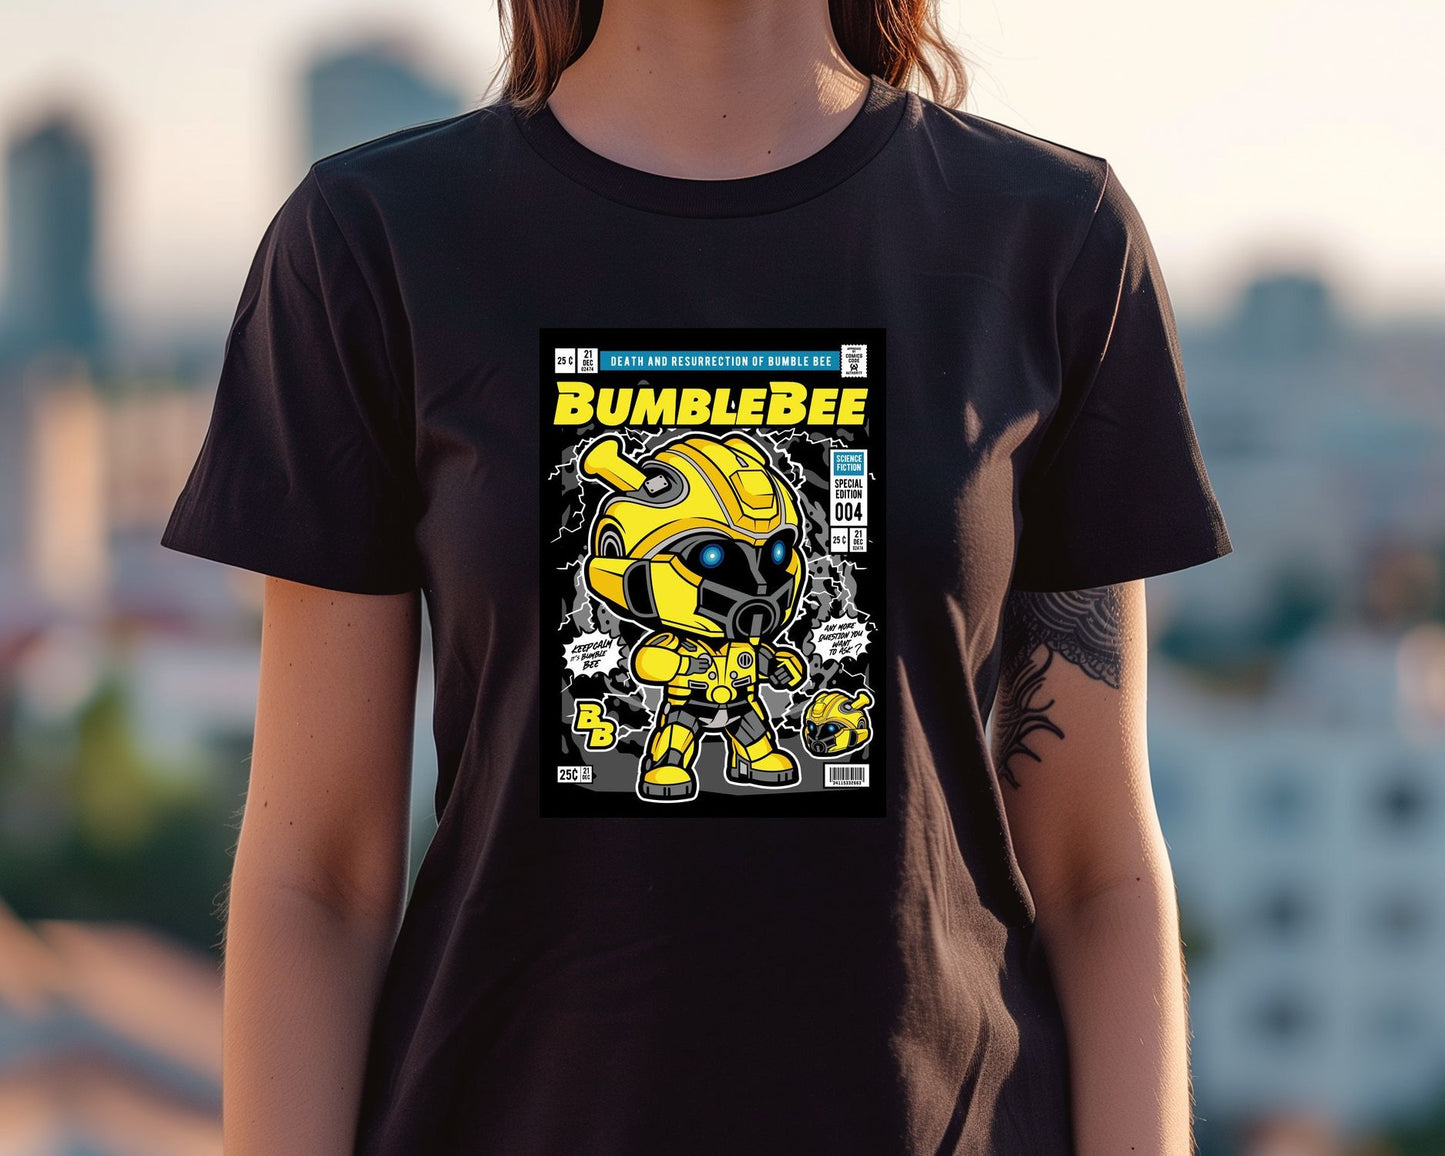 Bumble Bee - @hikenthree